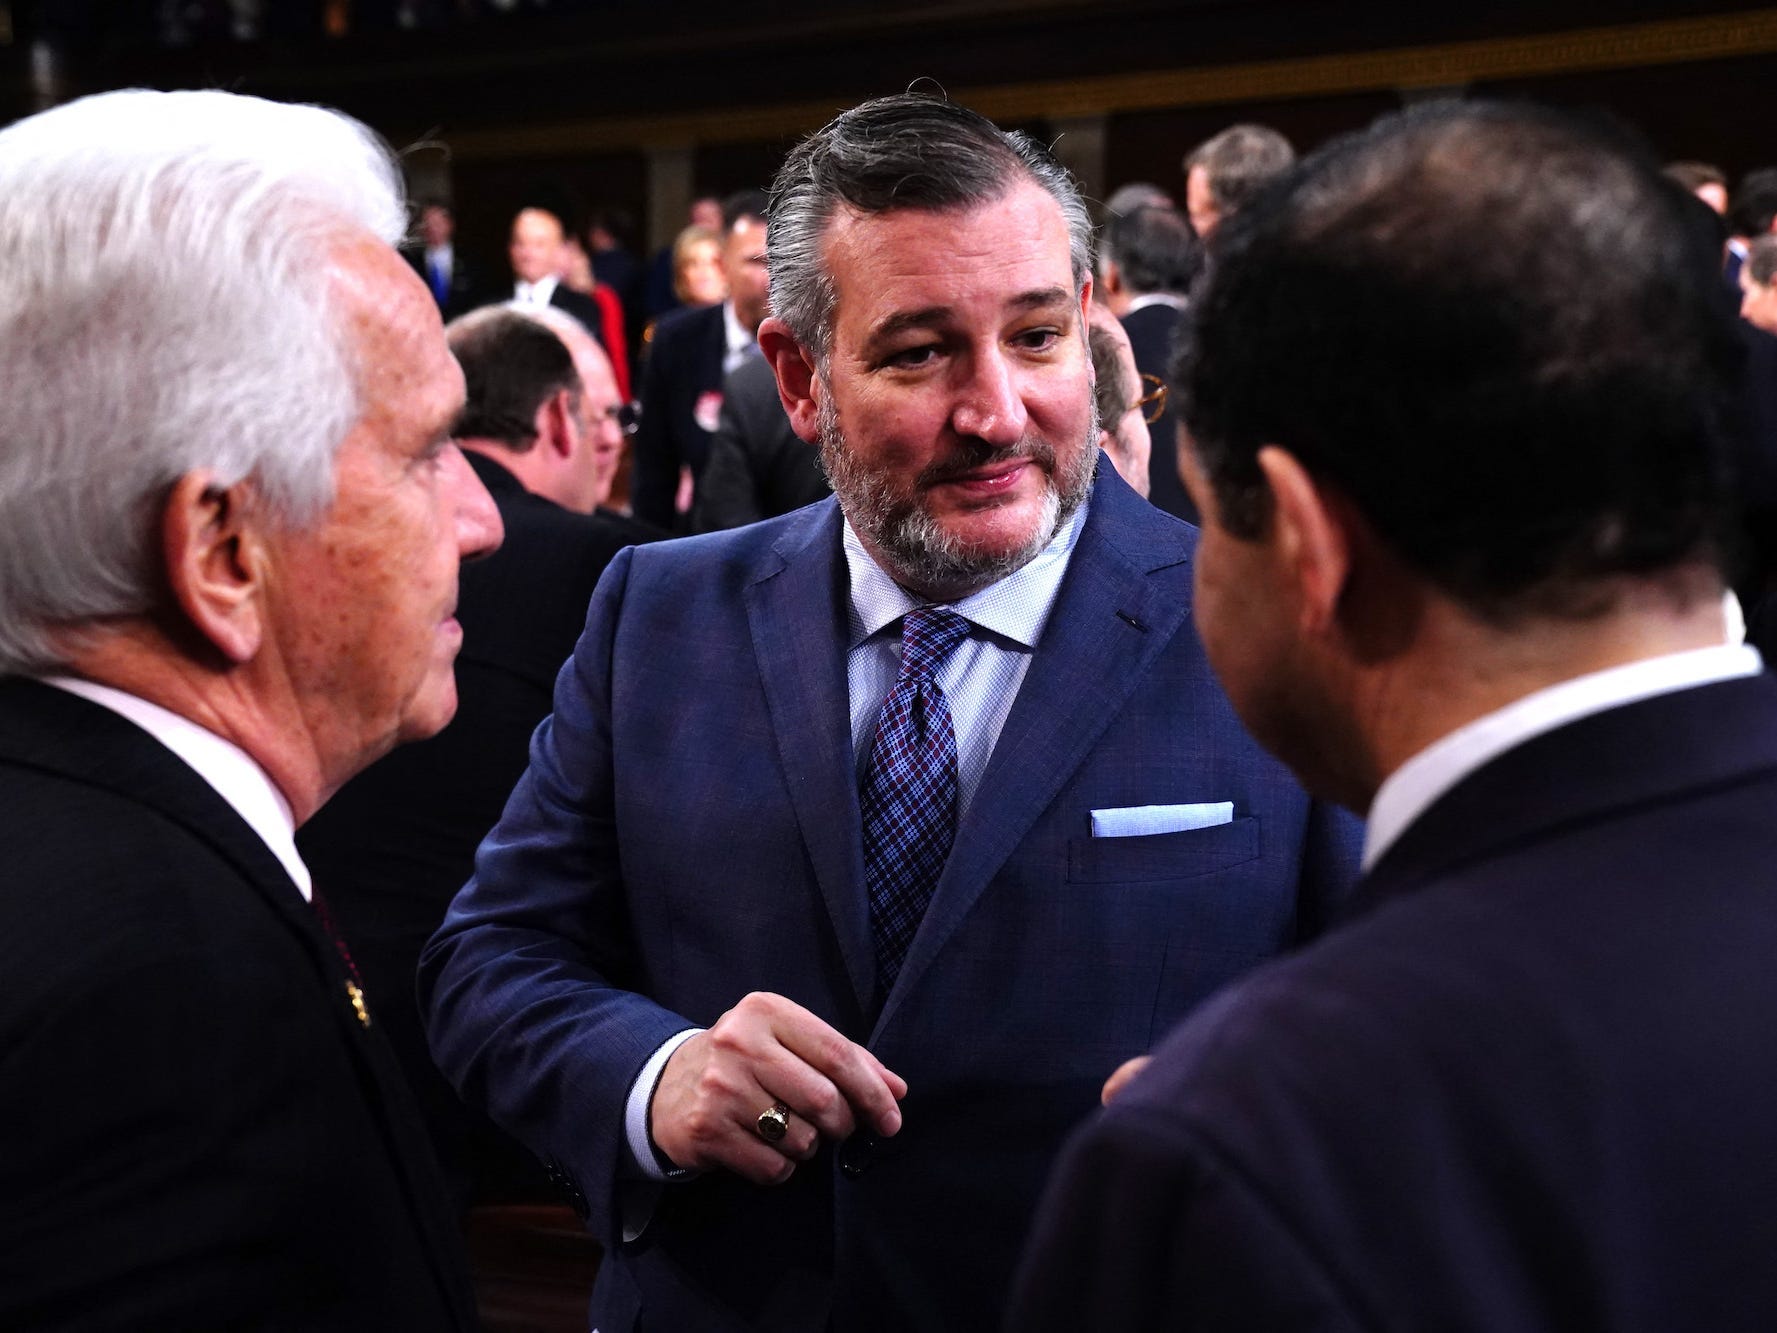 Ted Cruz half bei der Schaffung des aktuellen Systems, indem er den Bipartisan Campaign Finance Reform Act von 2002 in Frage stellte.